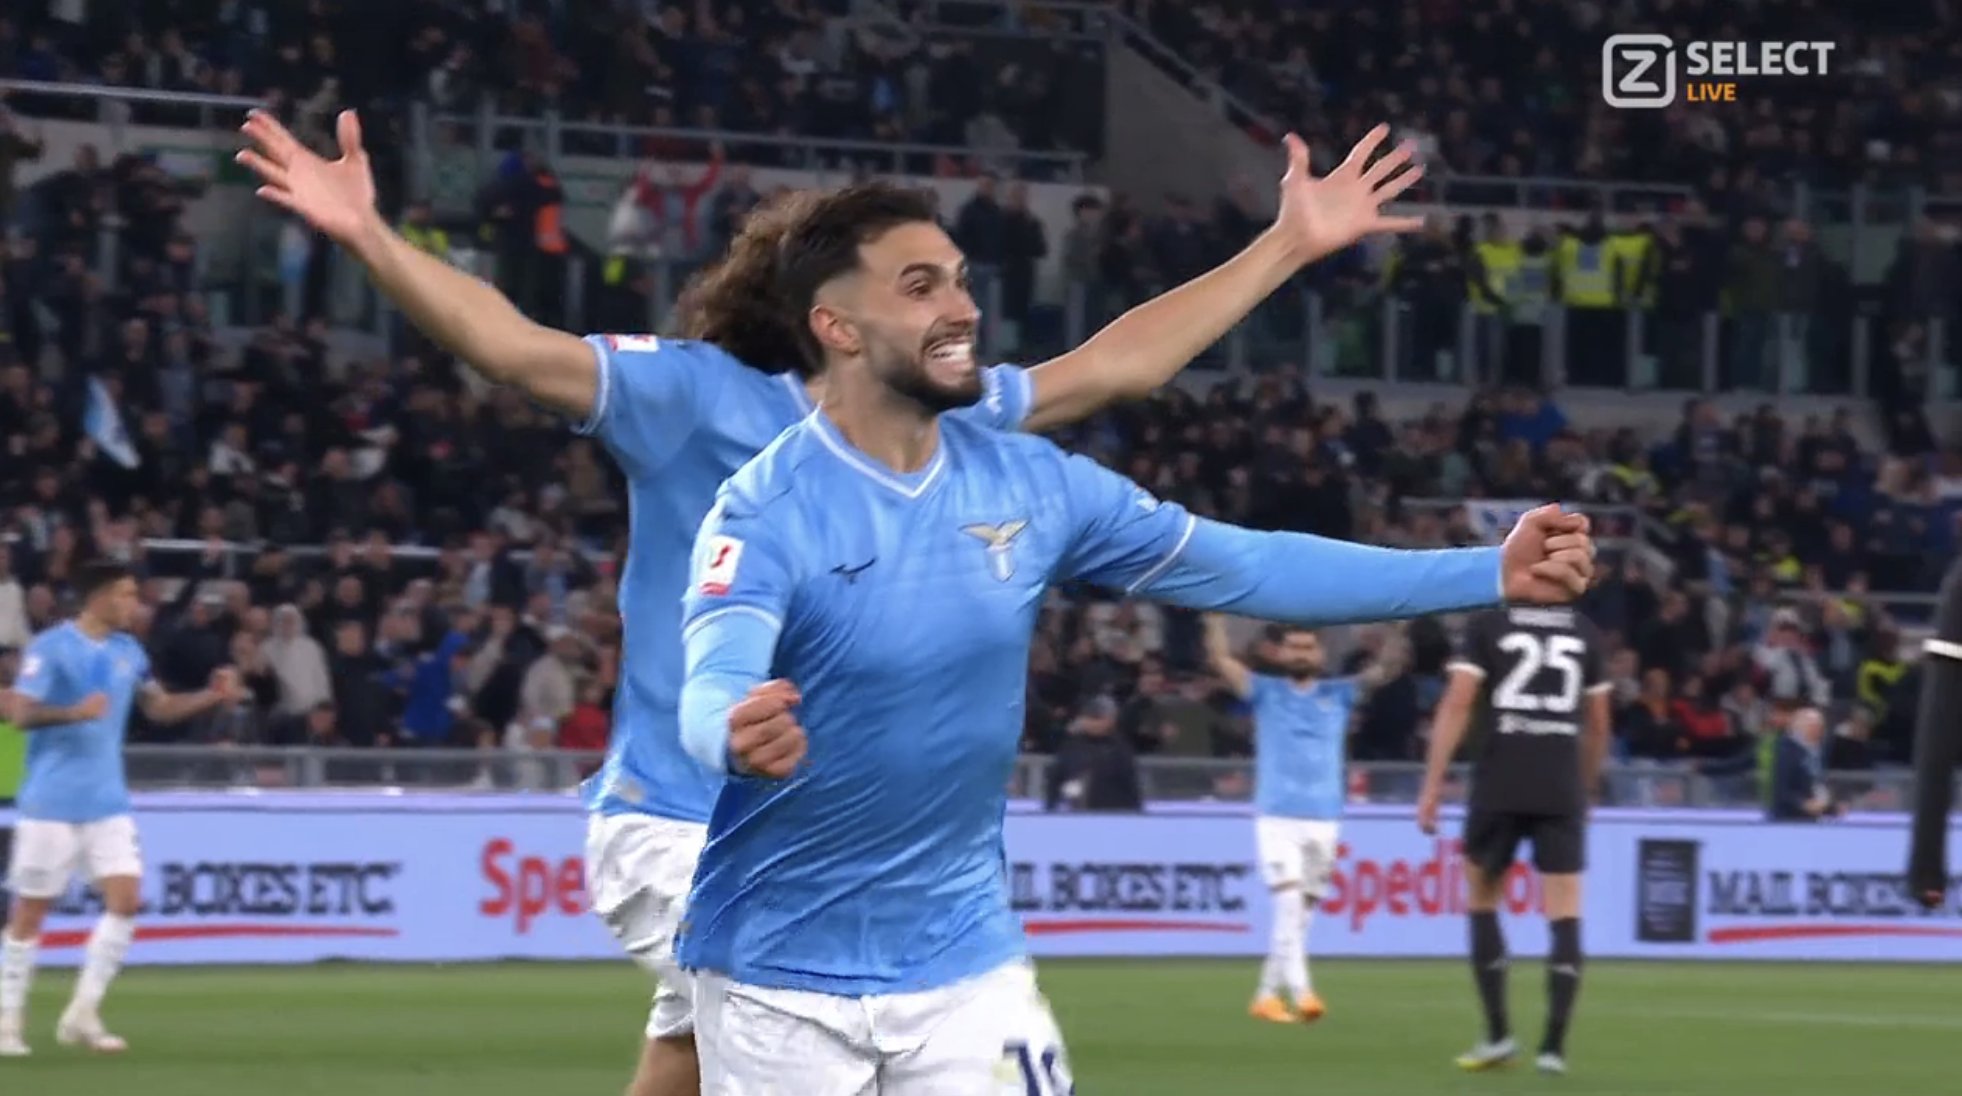 Gjithçka e barabartë në gjysmëfinalen e Kupës së Italisë  Lazio shënon golin e dytë ndaj Juventus